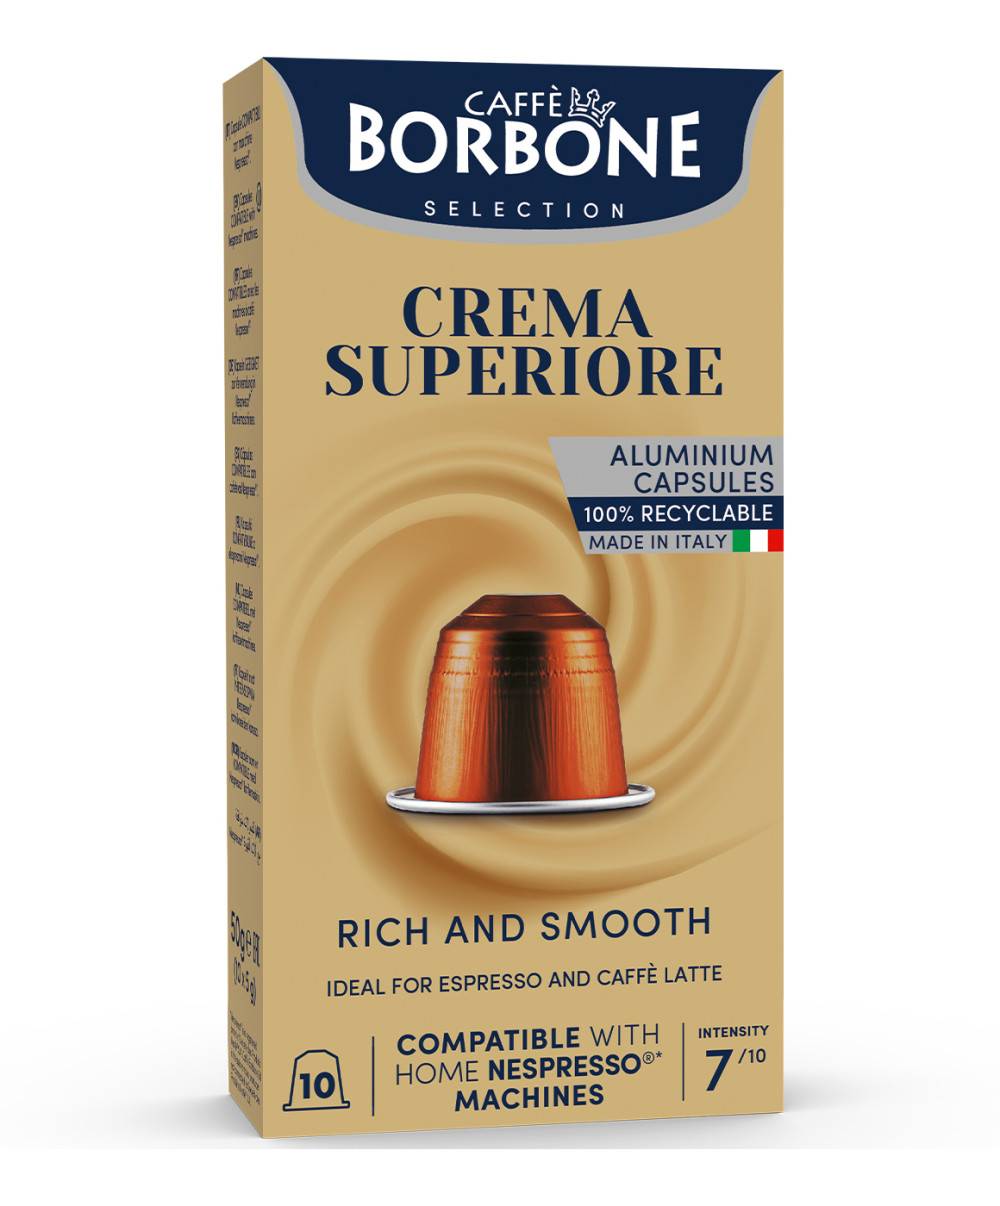 Borbone Caffé Nespresso x10 caps. - Crema Superiore 50g  